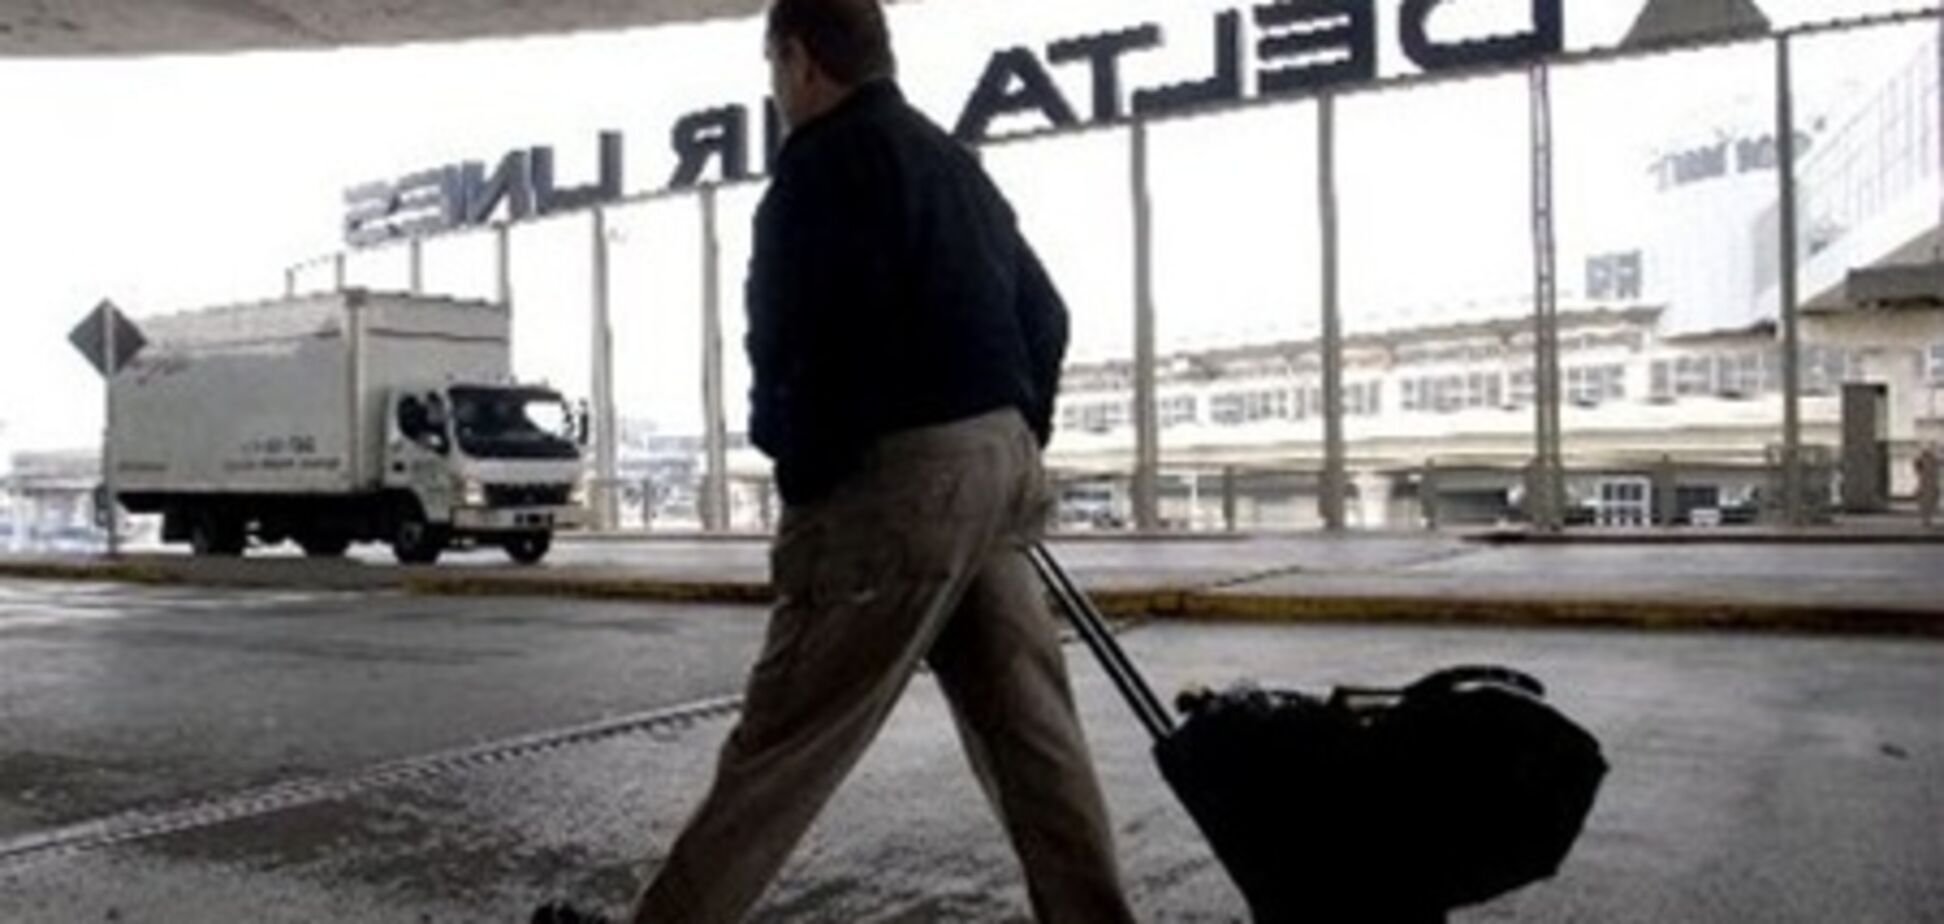 Аэропорты Нью-Йорка в субботу будут закрыты из-за урагана